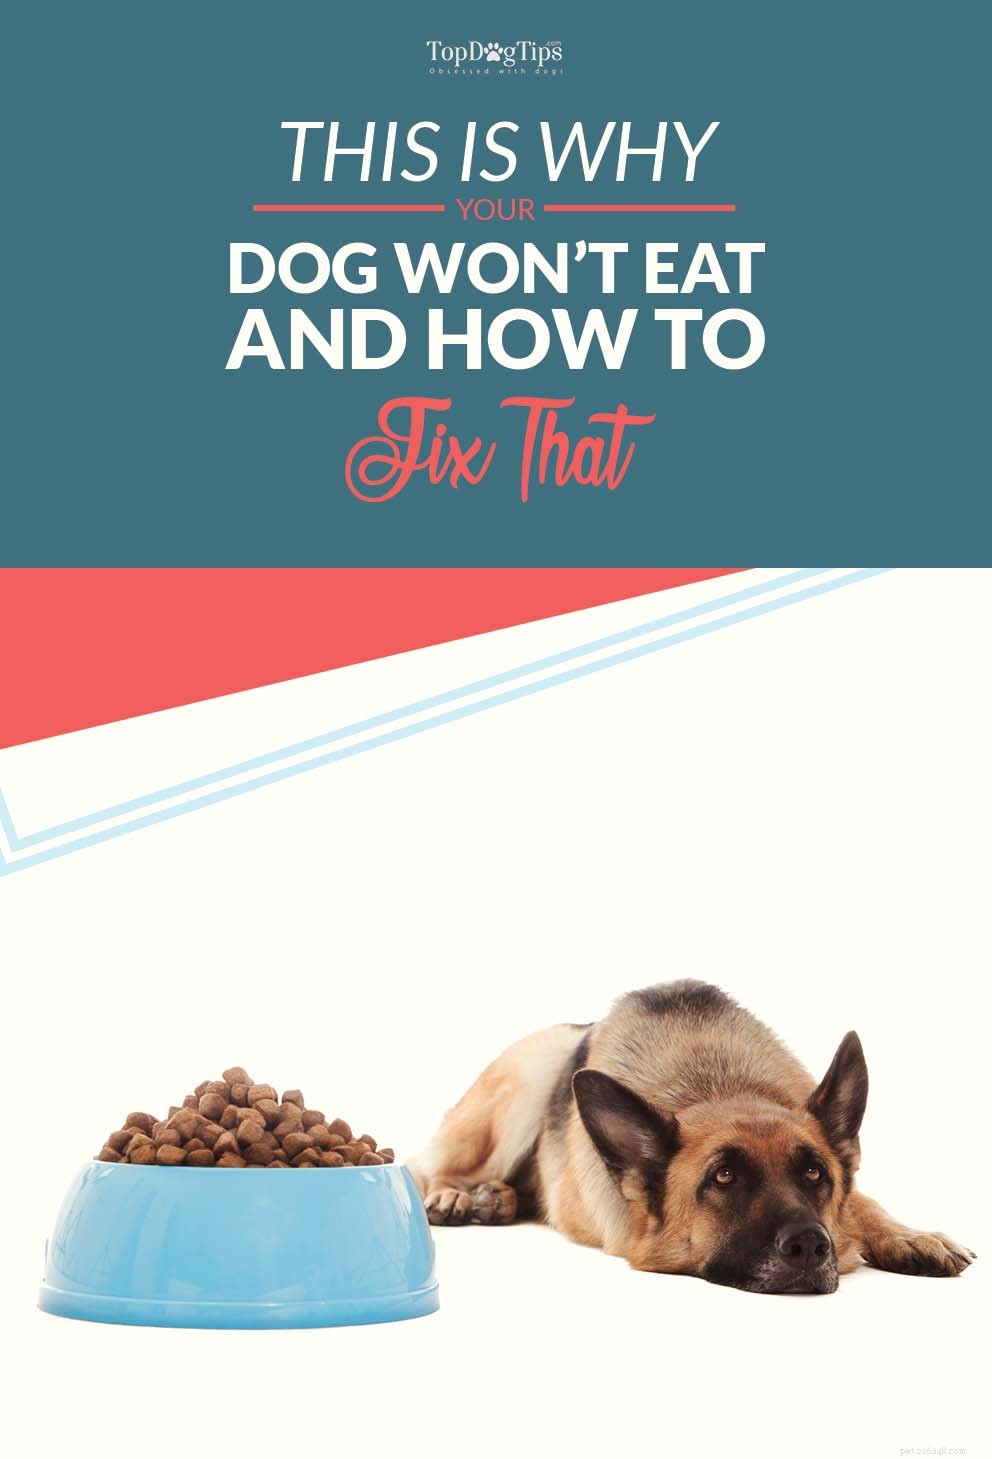 Proč můj pes nebude jíst? Zde je důvod, proč psi mohou odmítat jídlo